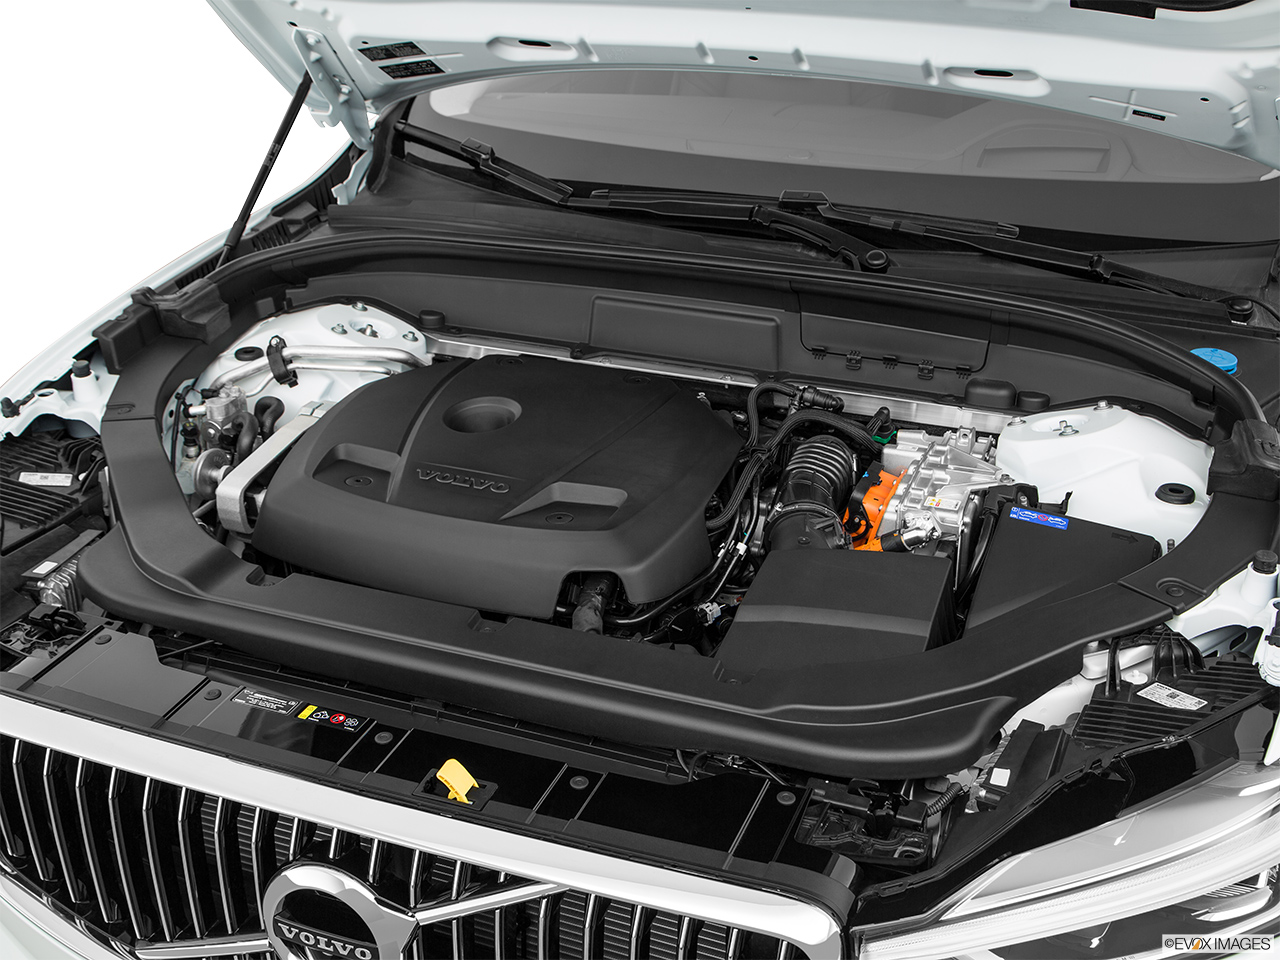 2019 Volvo XC60 T8 Inscription eAWD Plug-in Hybrid Engine. 